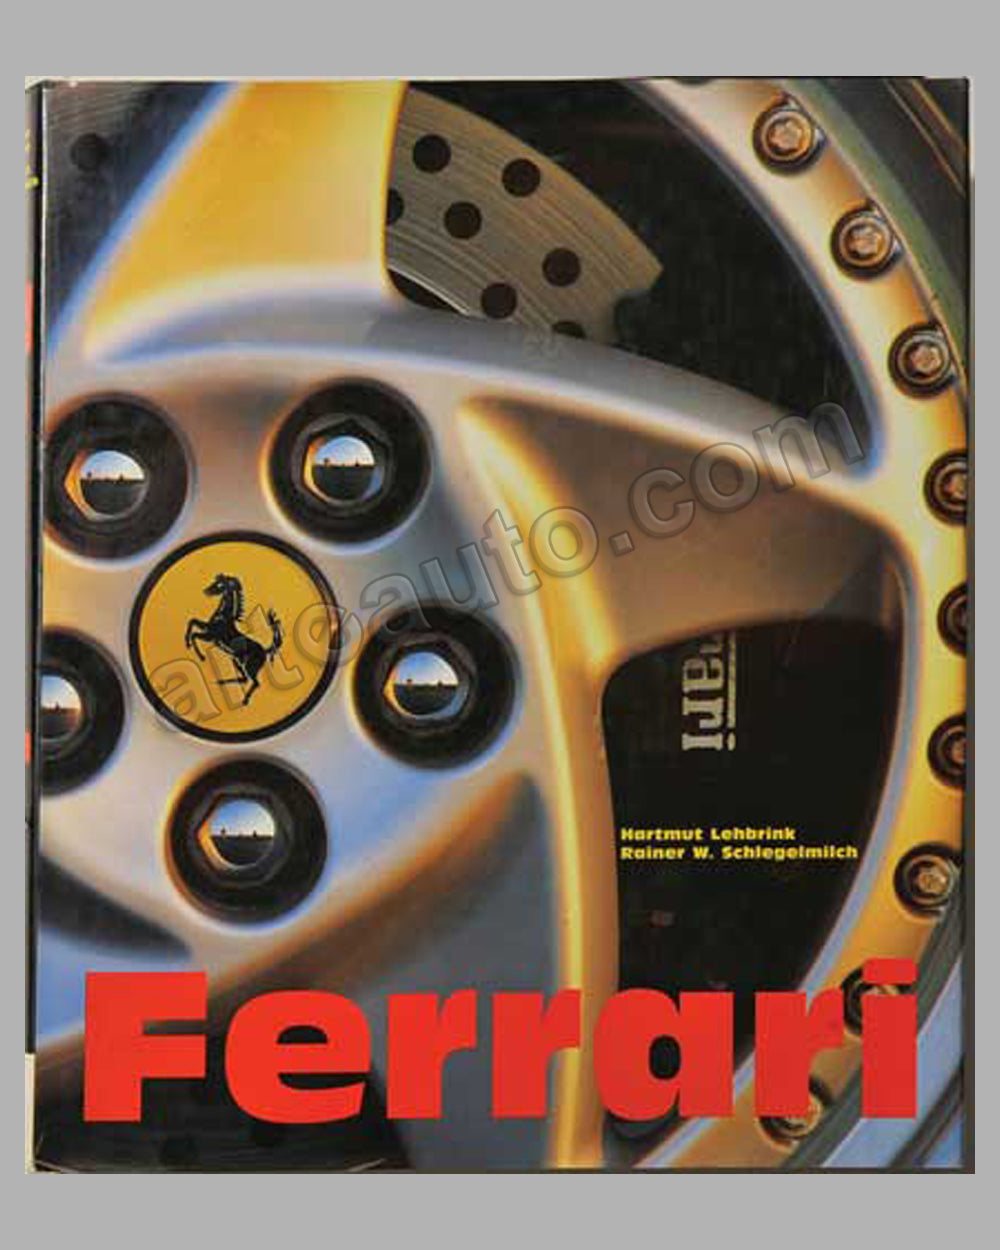 Ferrari book by H. Lehbrink and R. W. Schlegelmilch, 1995